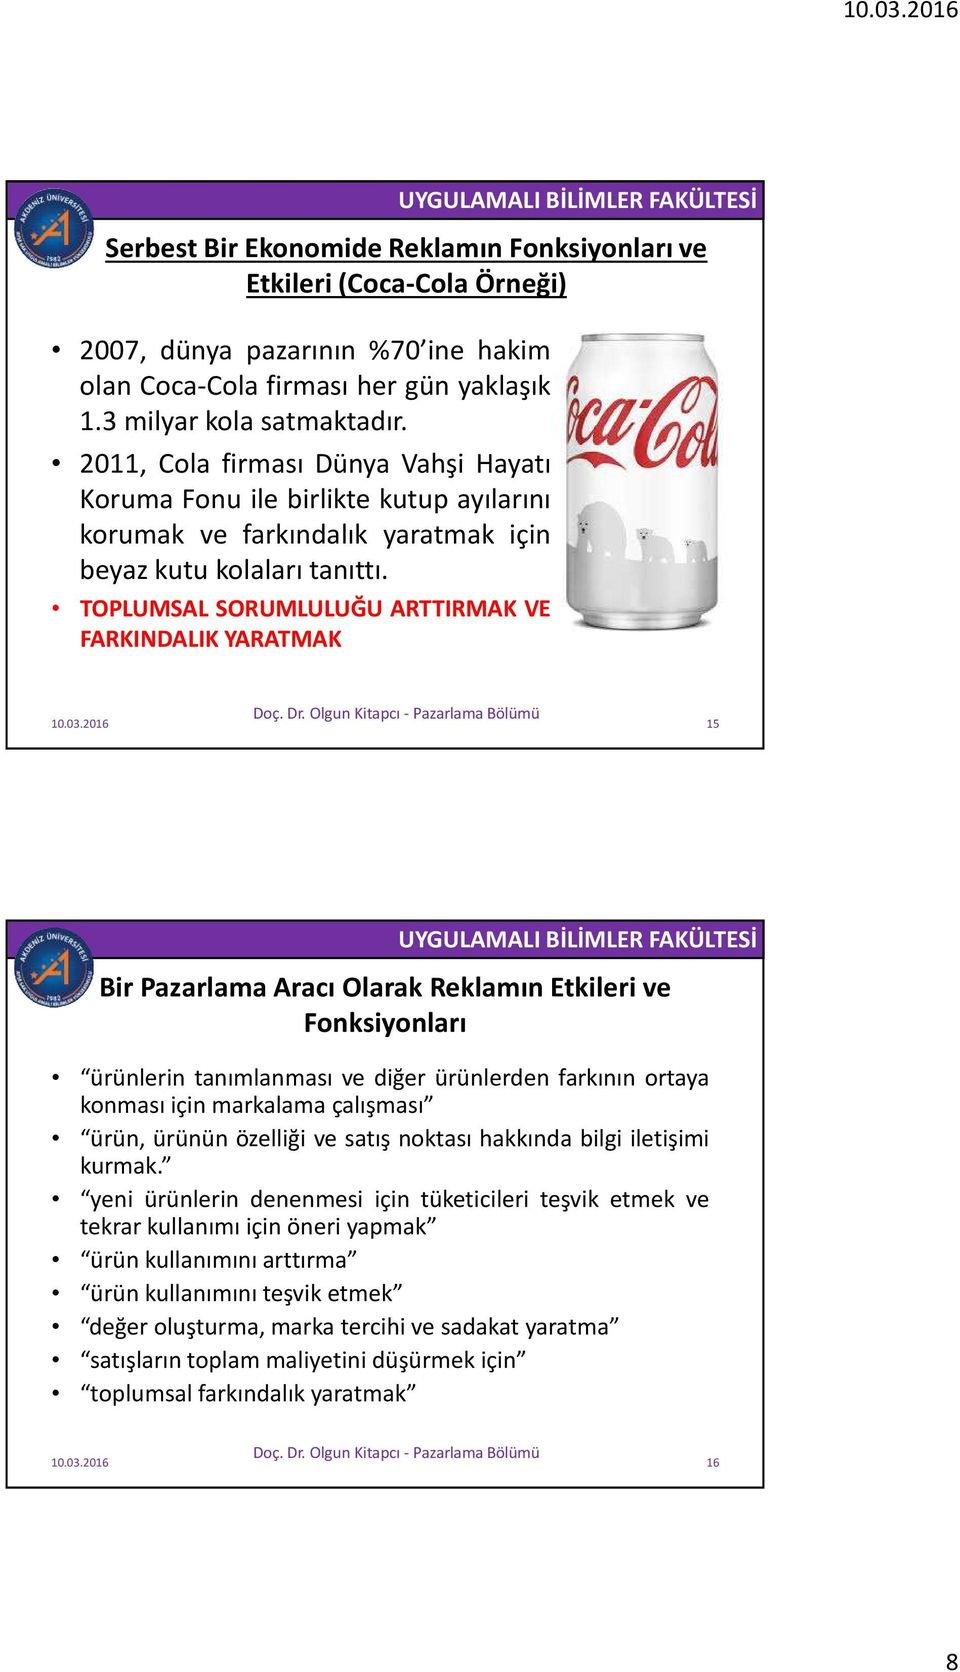 TOPLUMSAL SORUMLULUĞU ARTTIRMAK VE FARKINDALIK YARATMAK Serbest Bir Ekonomide Reklamın Fonksiyonları ve Etkileri (Coca-Cola Örneği) 15 Bir Pazarlama Aracı Olarak Reklamın Etkileri ve Fonksiyonları